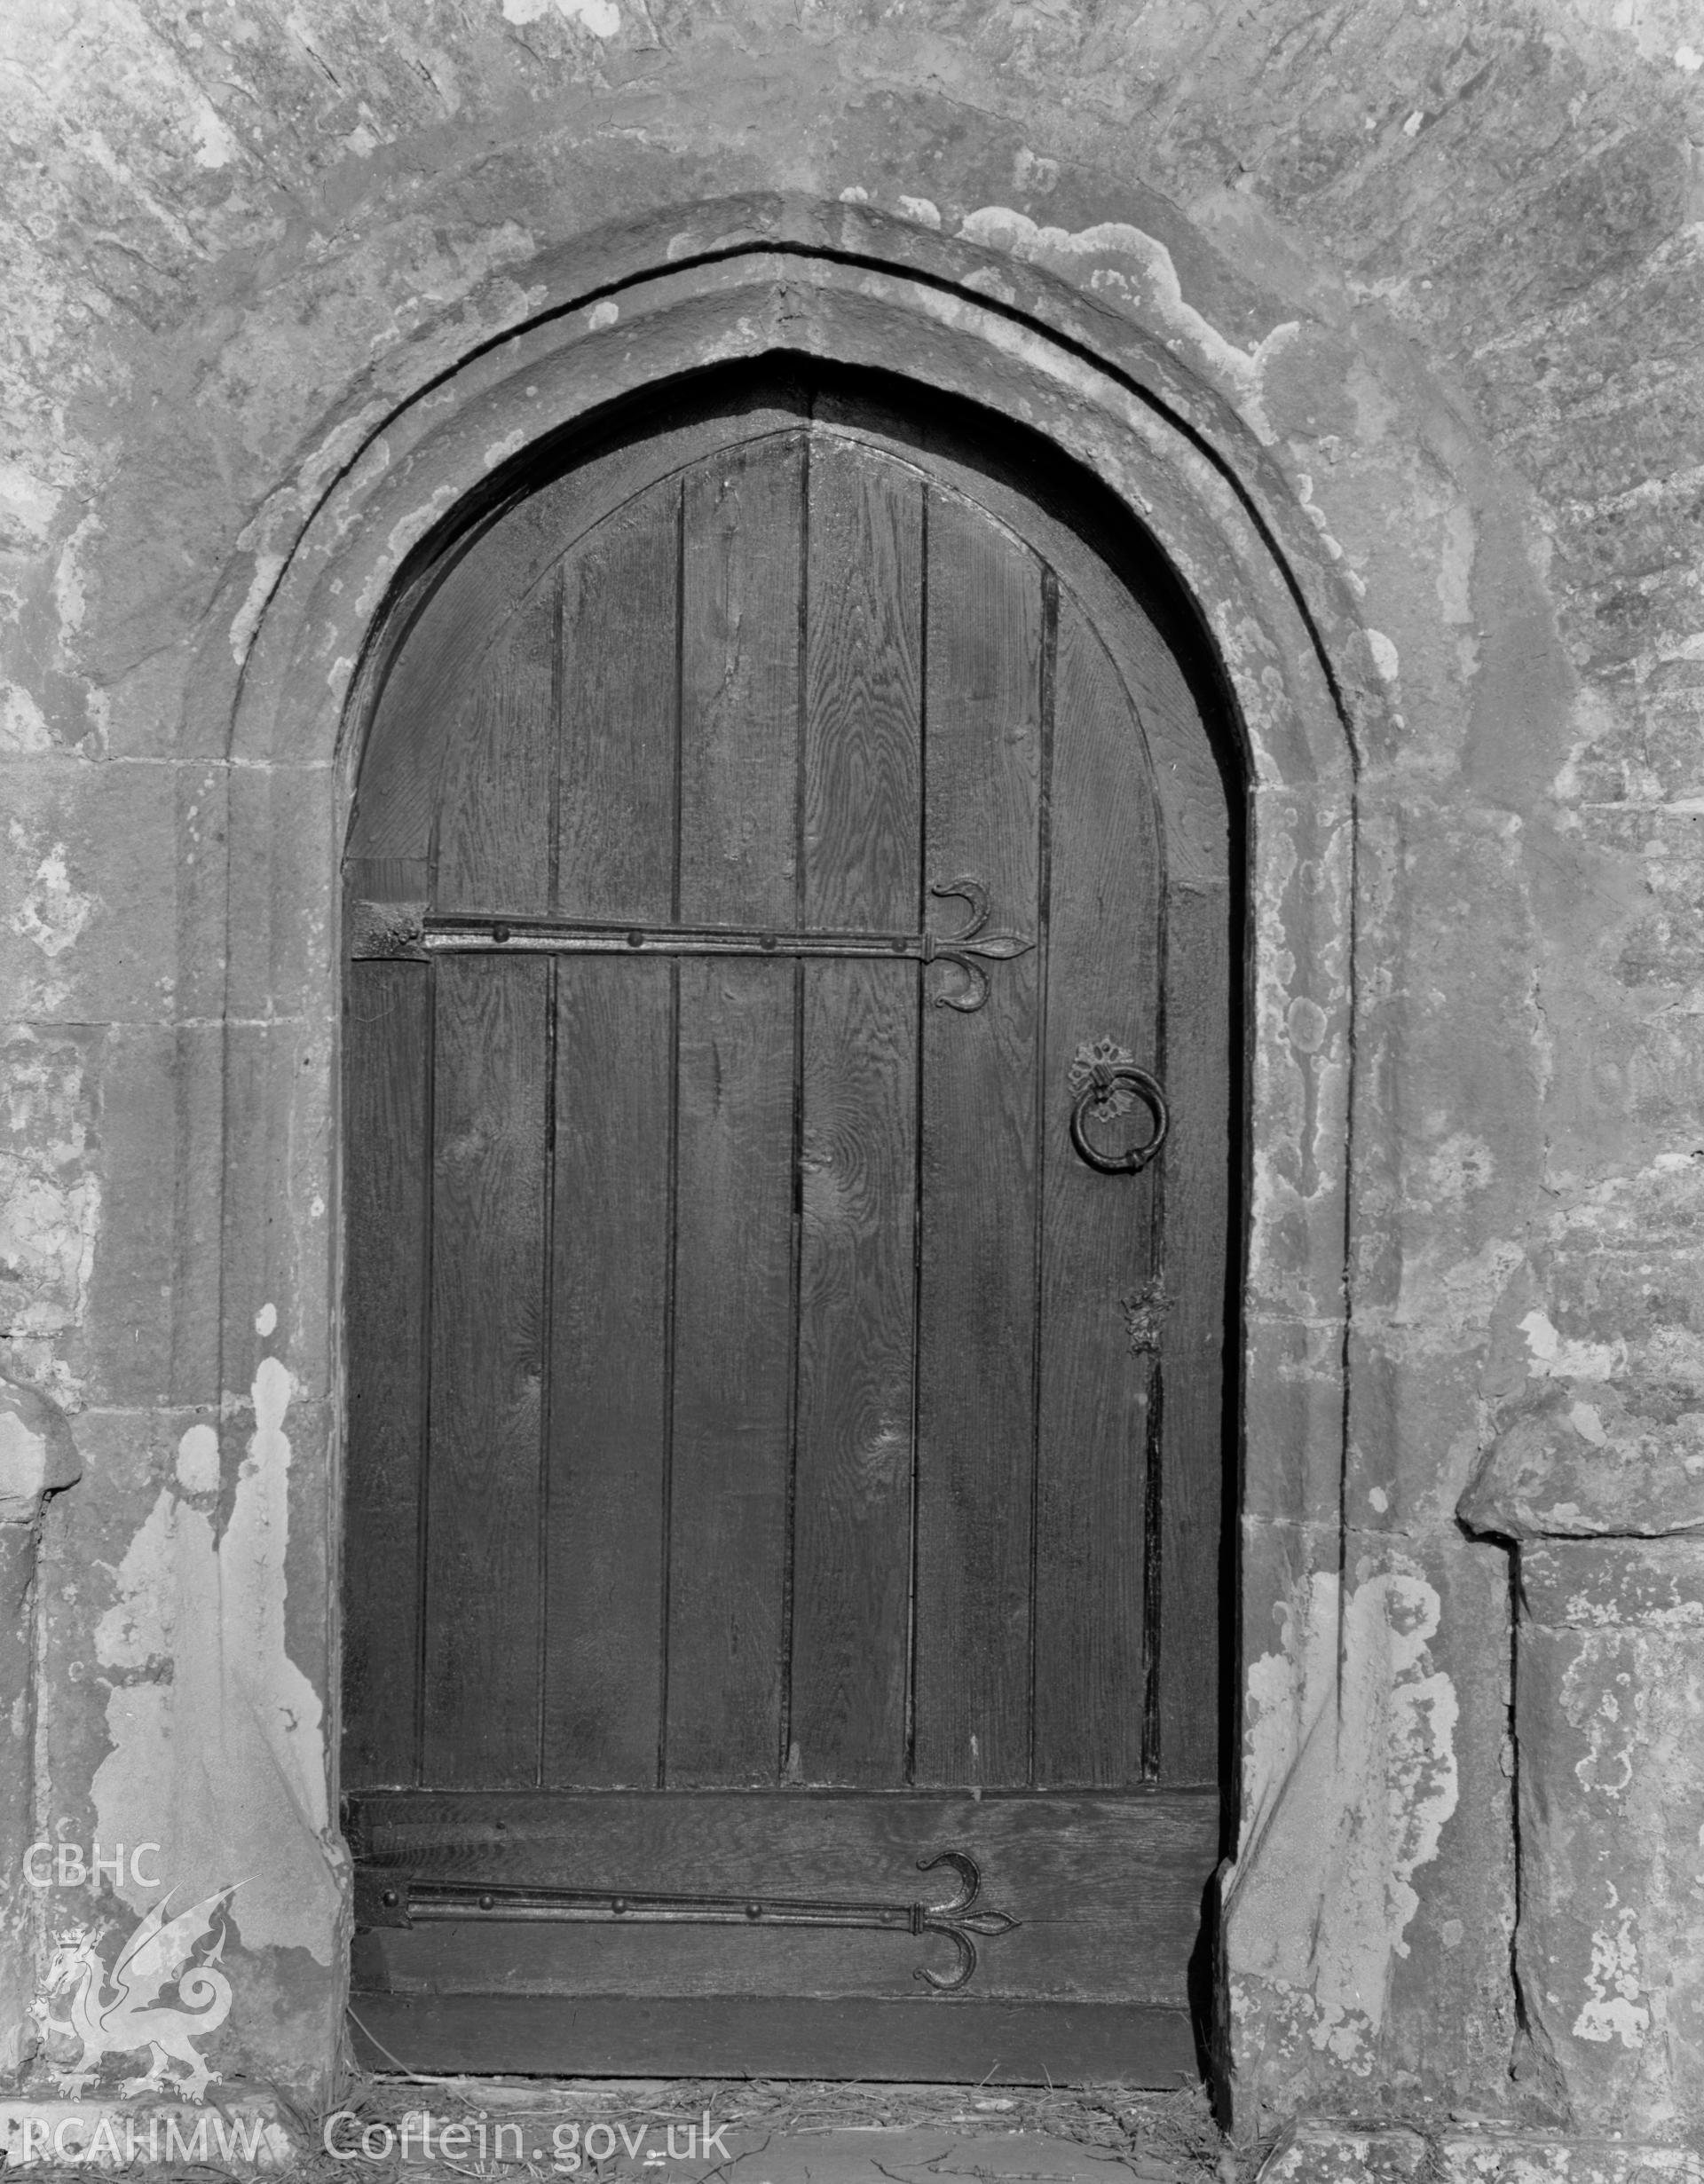 View of door at St Michael's Church, Llanmihangel taken 07.04.65.